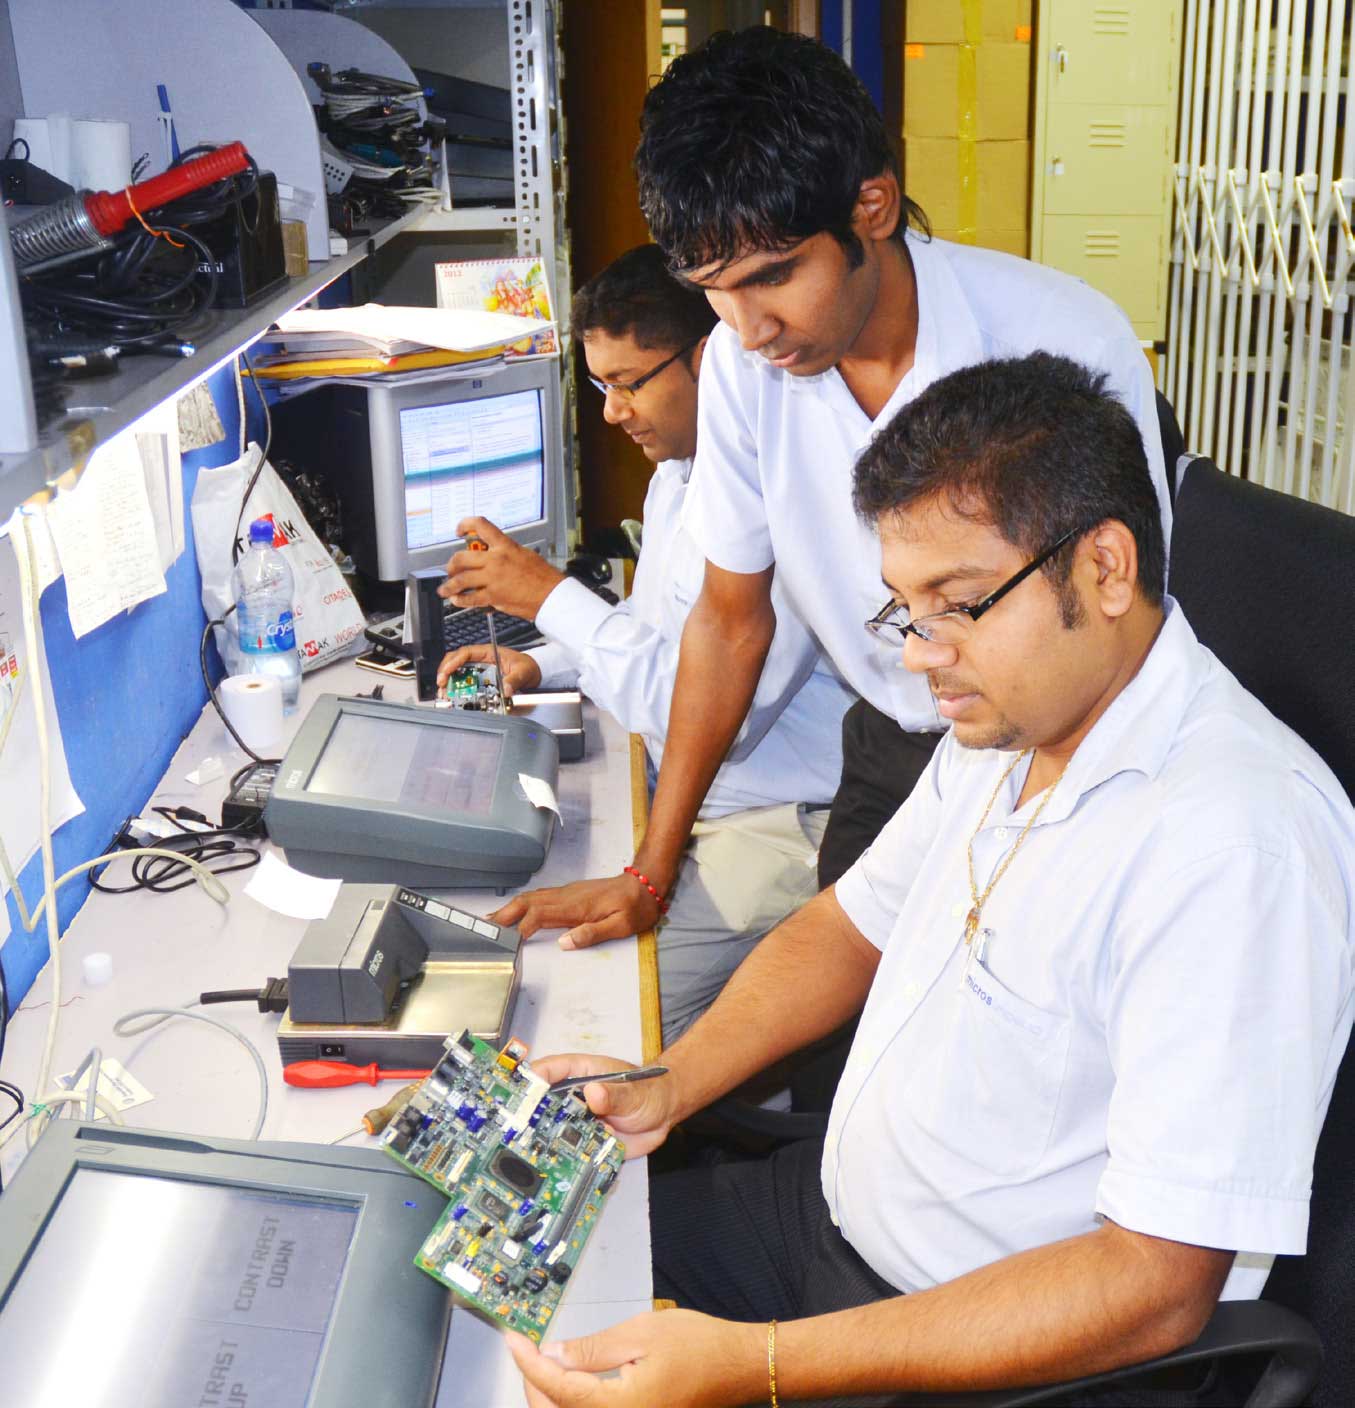 Les techniciens de l’atelier assurent une réparation méthodique des matériels informatiques.